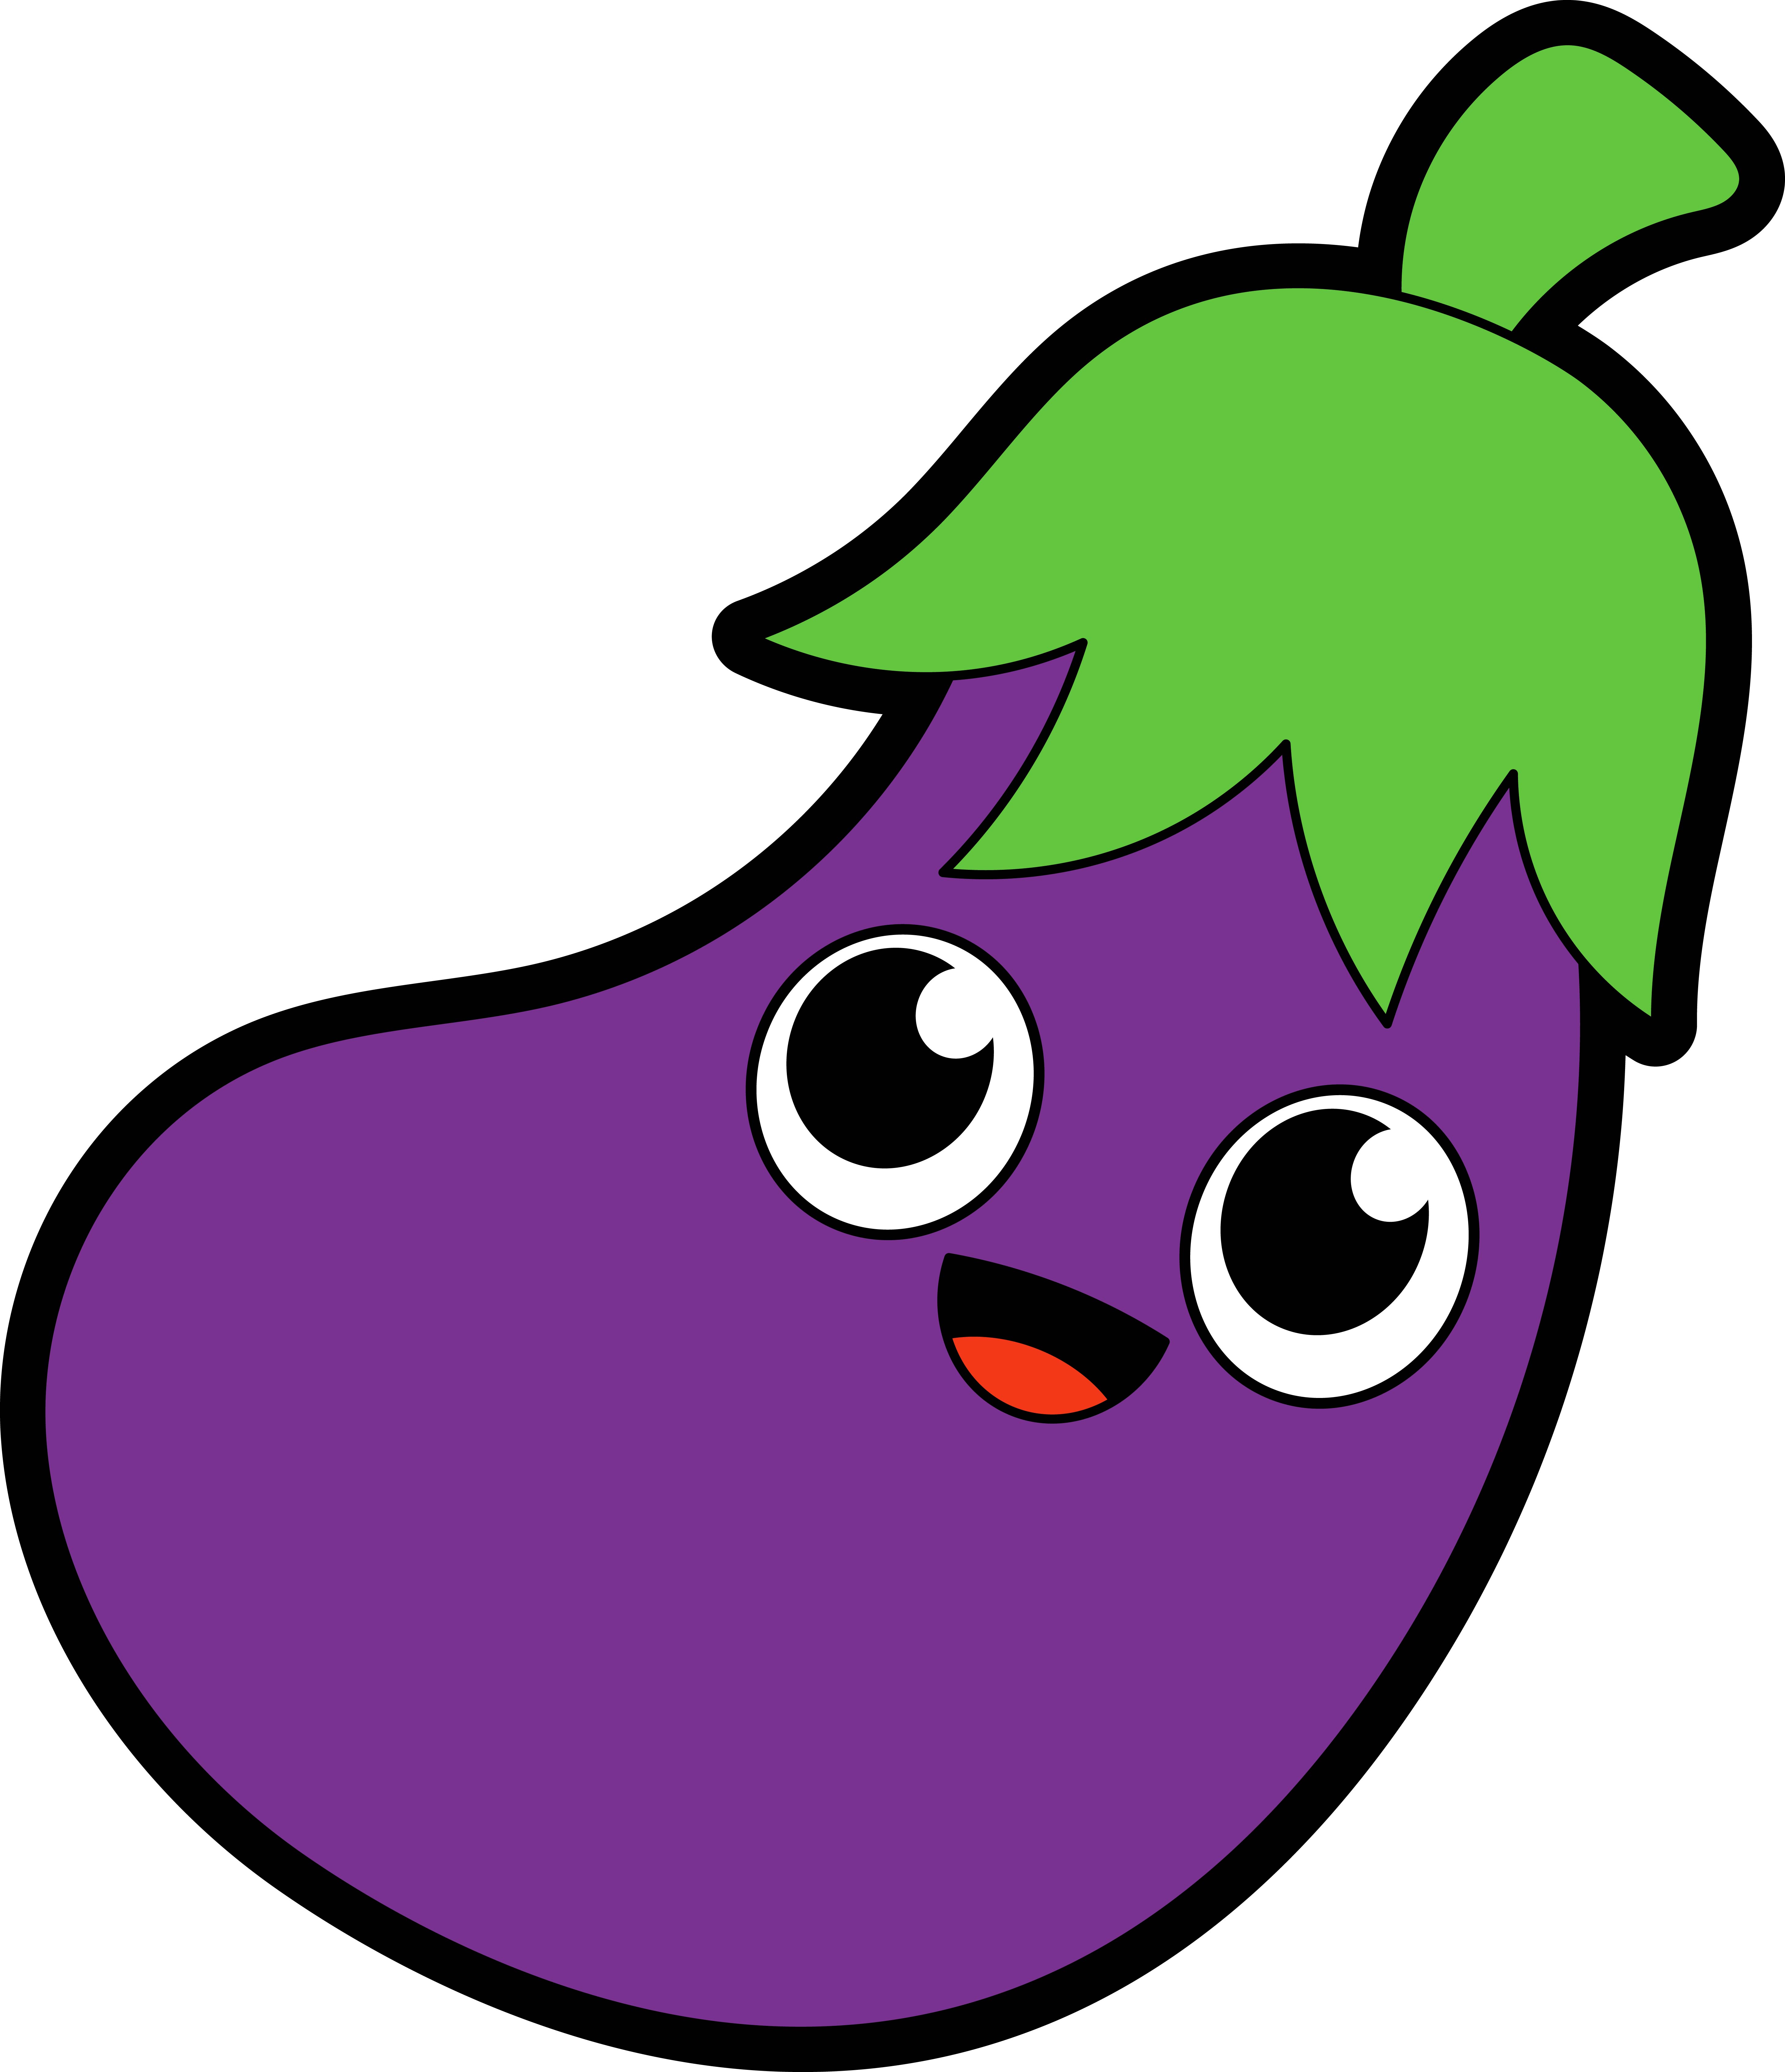 Образец раскрашенной картинки фиолетовый овощ баклажан с глазами